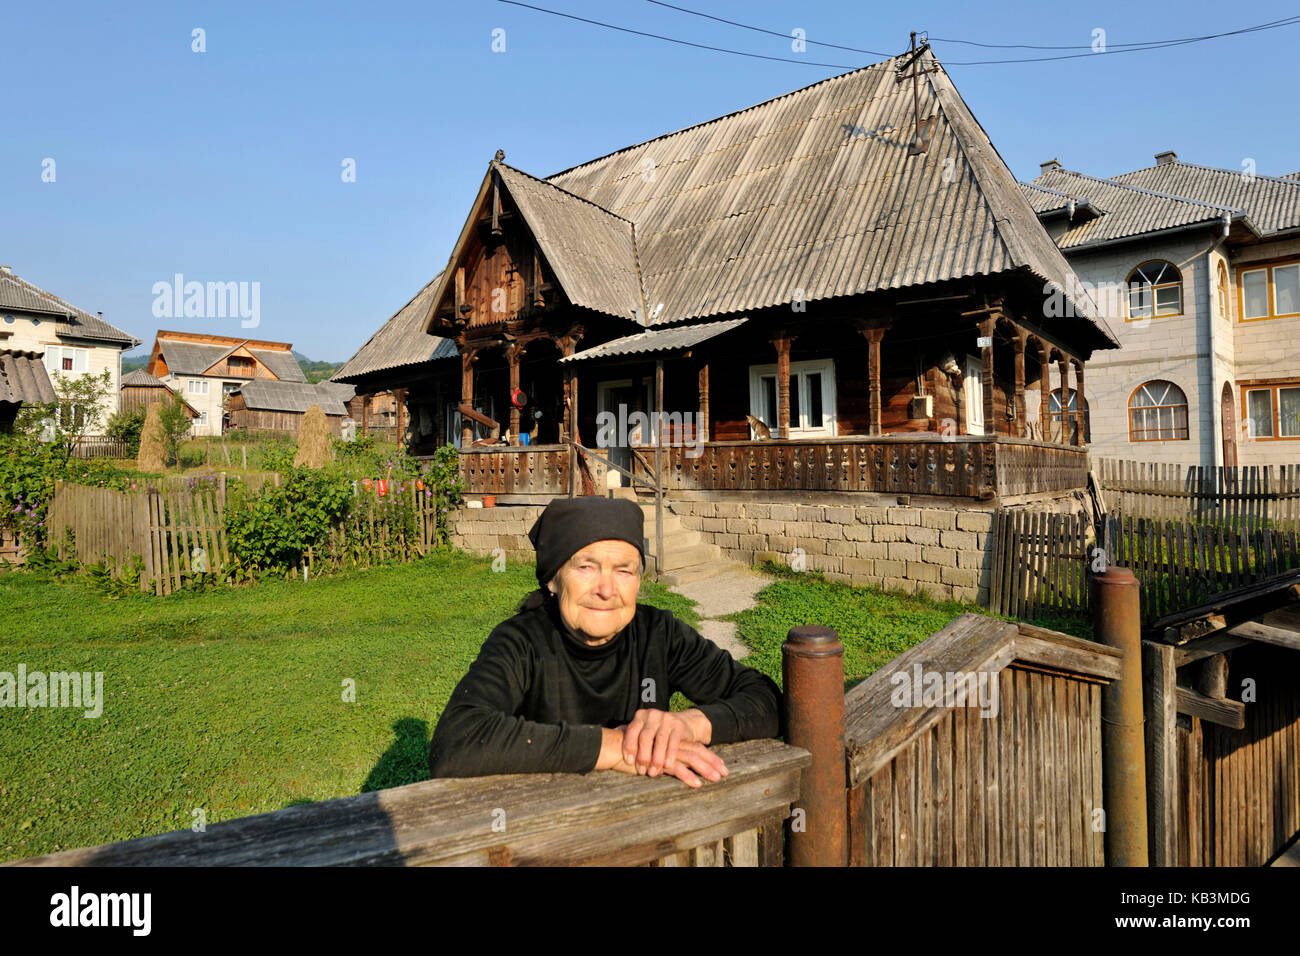 Roumanie, le Maramures, région des montagnes Carpates, vallée de l'iza, village de Poienile Izei Banque D'Images